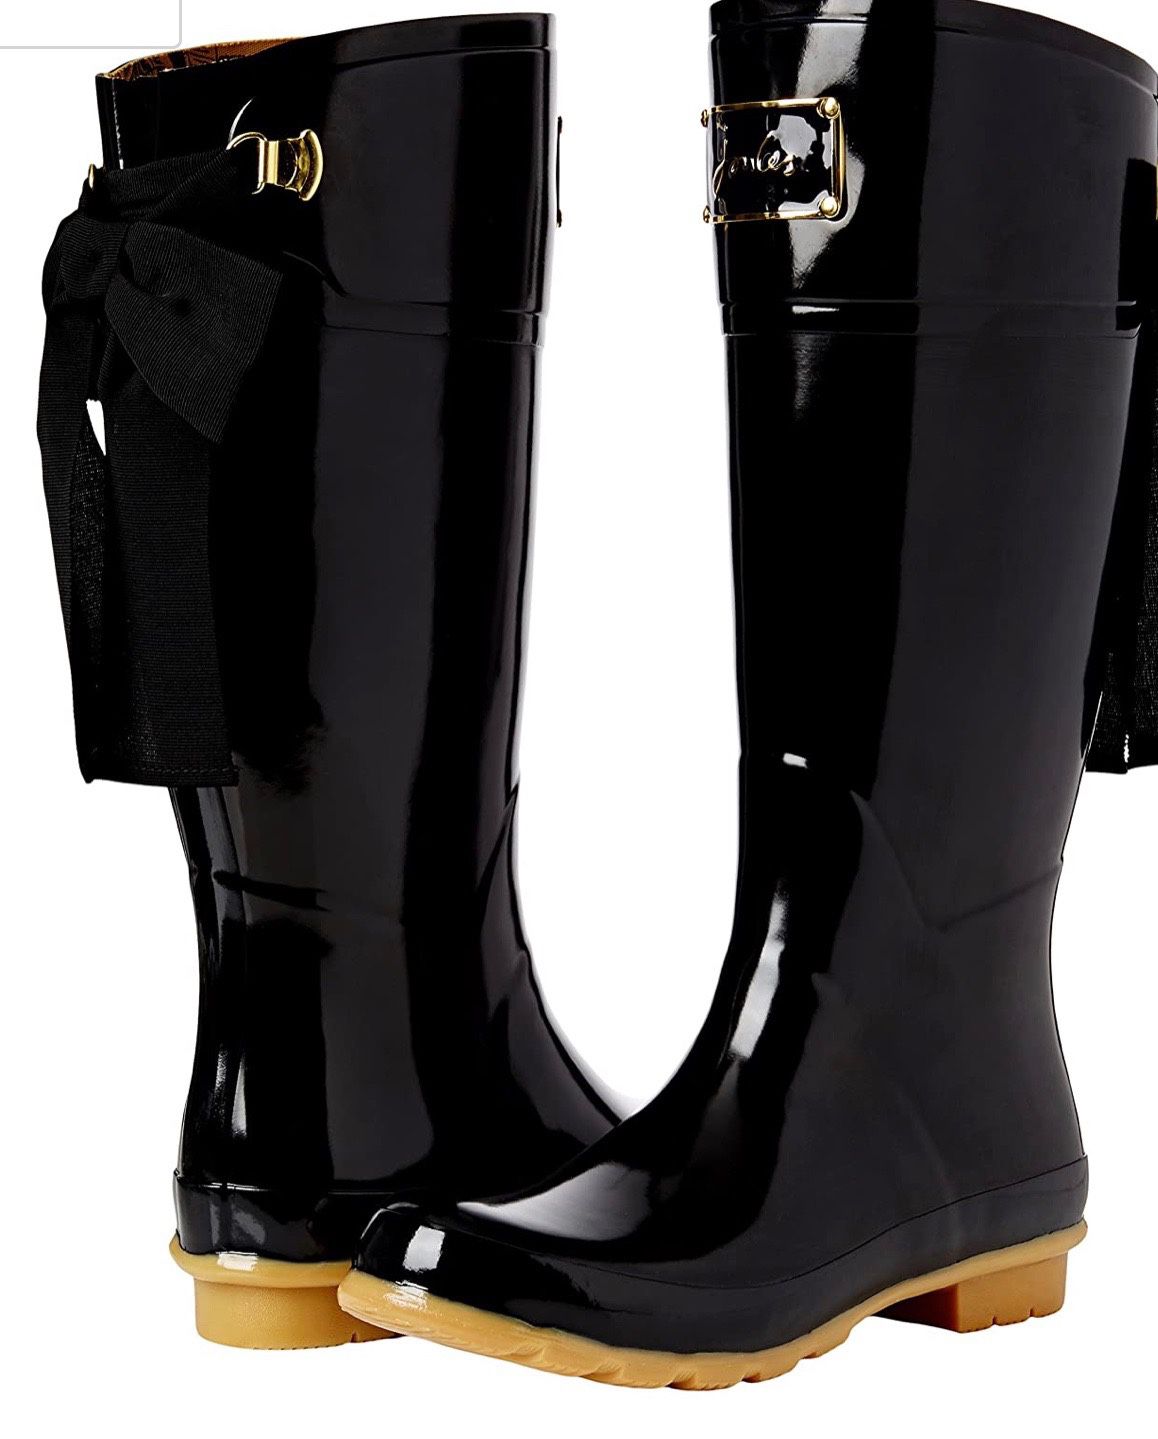 Joules Long Rain boots Size US 6 (UK 4 )